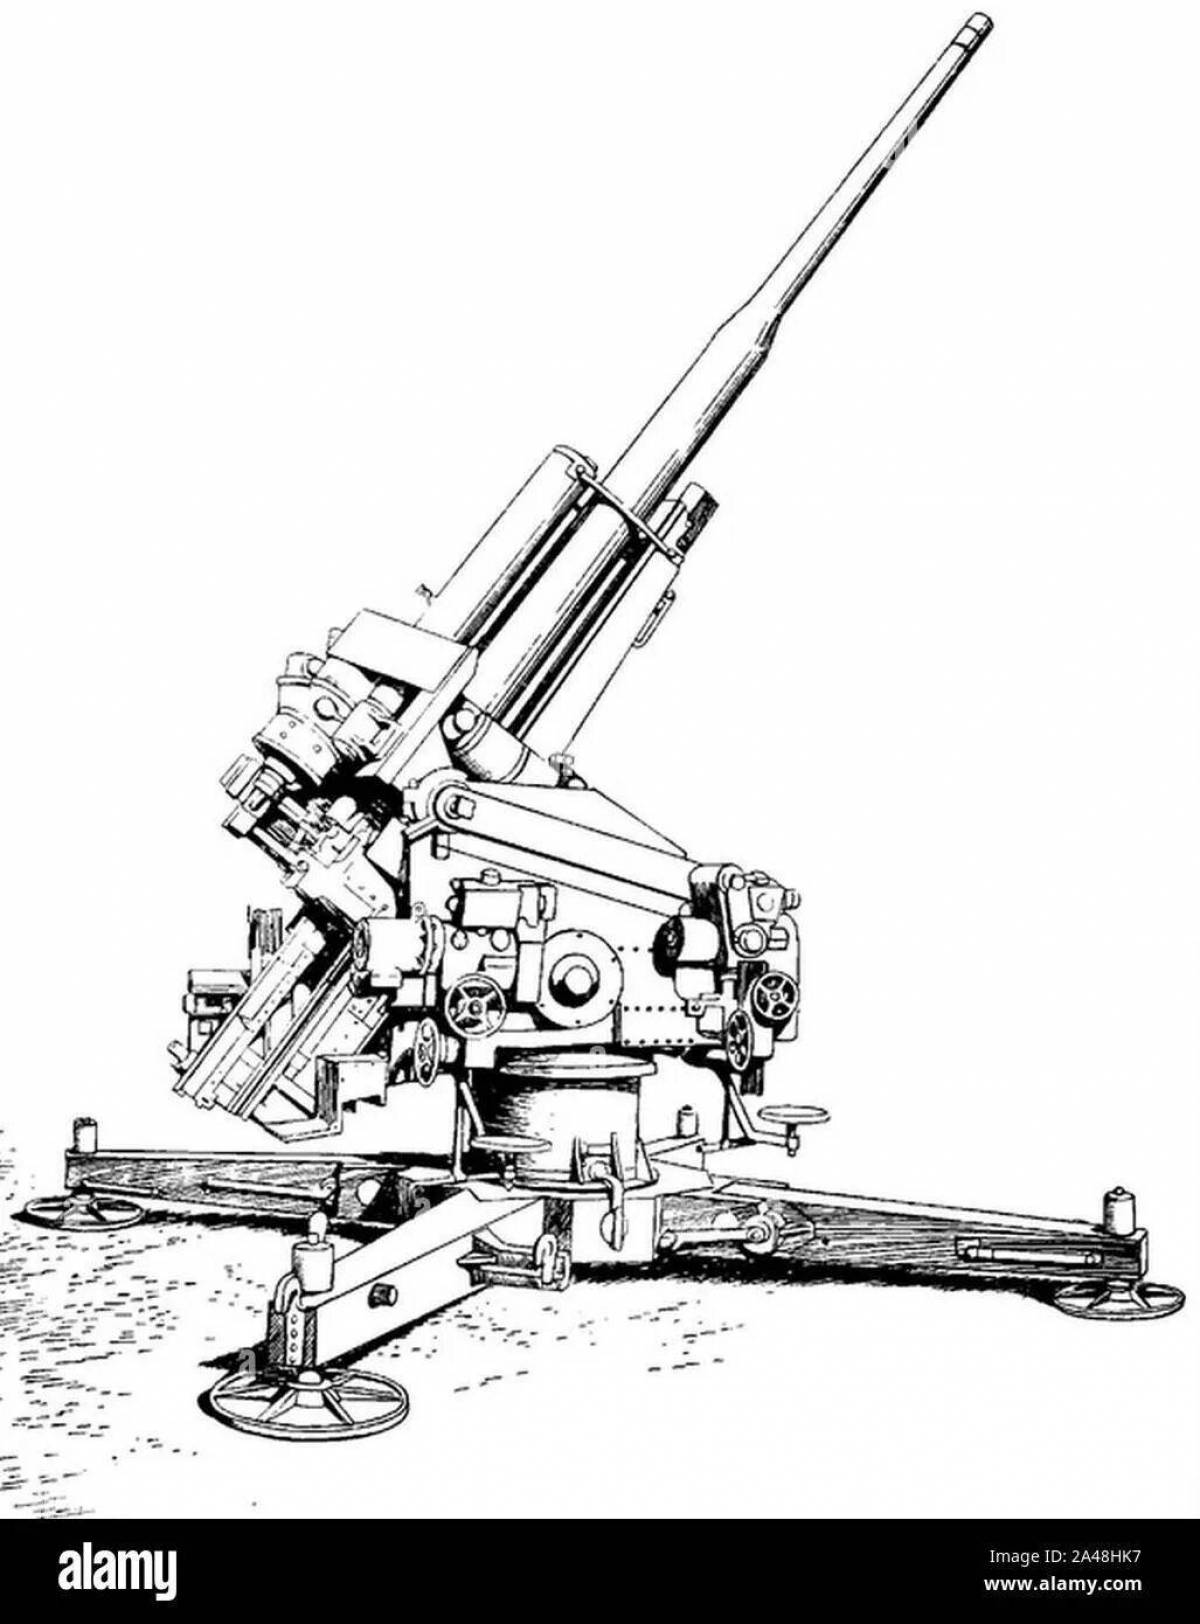 88-Мм зенитная пушка Flak 38 10,5